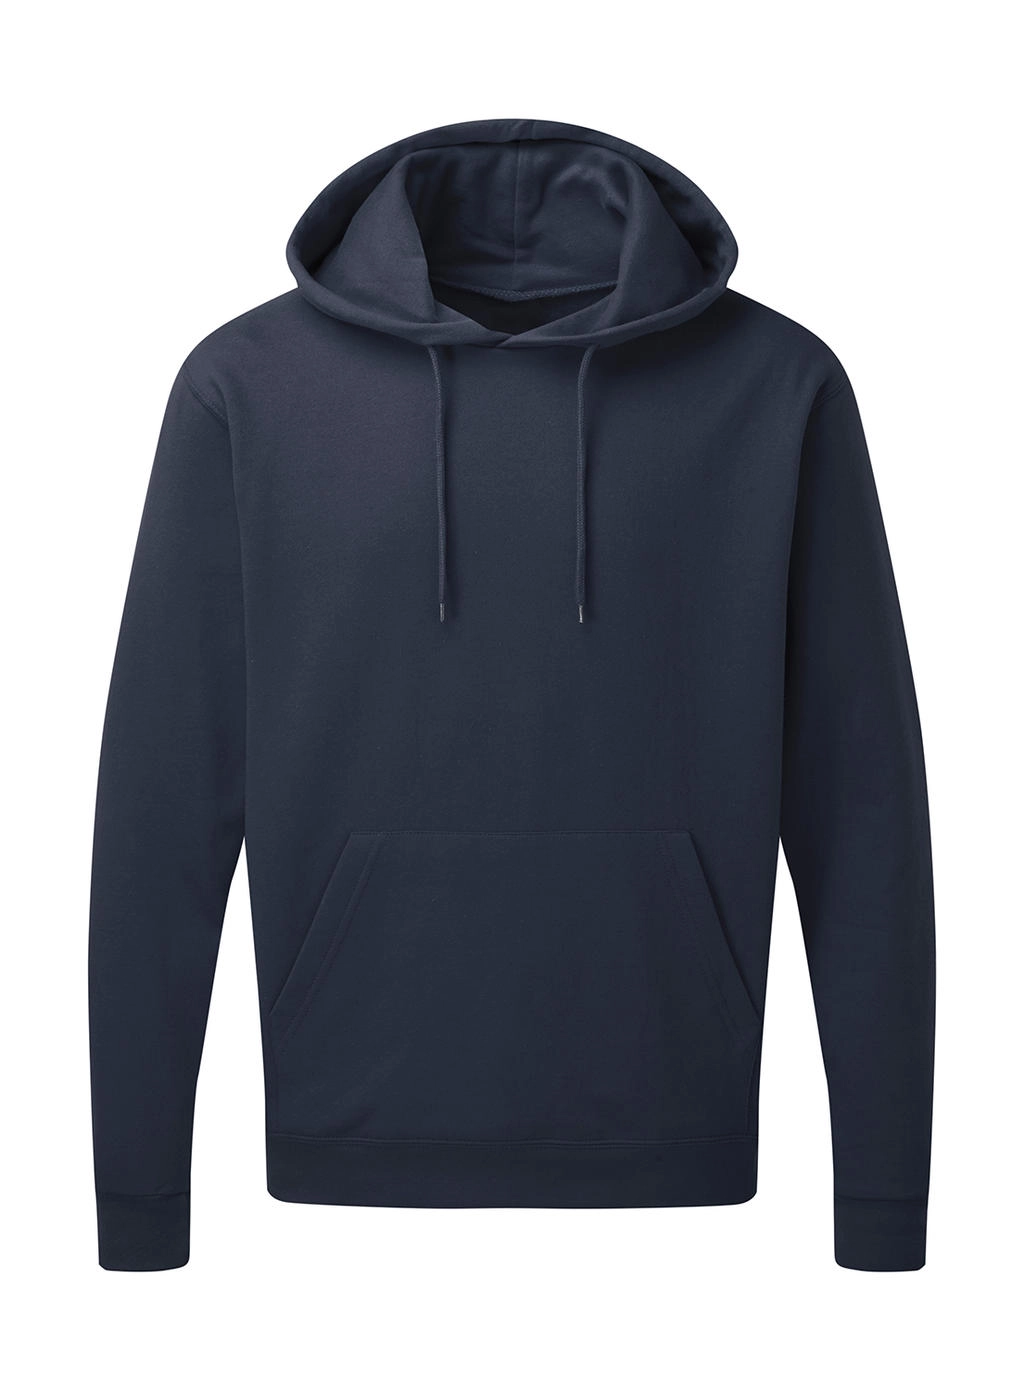 Hooded Sweatshirt Men zum Besticken und Bedrucken in der Farbe Denim mit Ihren Logo, Schriftzug oder Motiv.